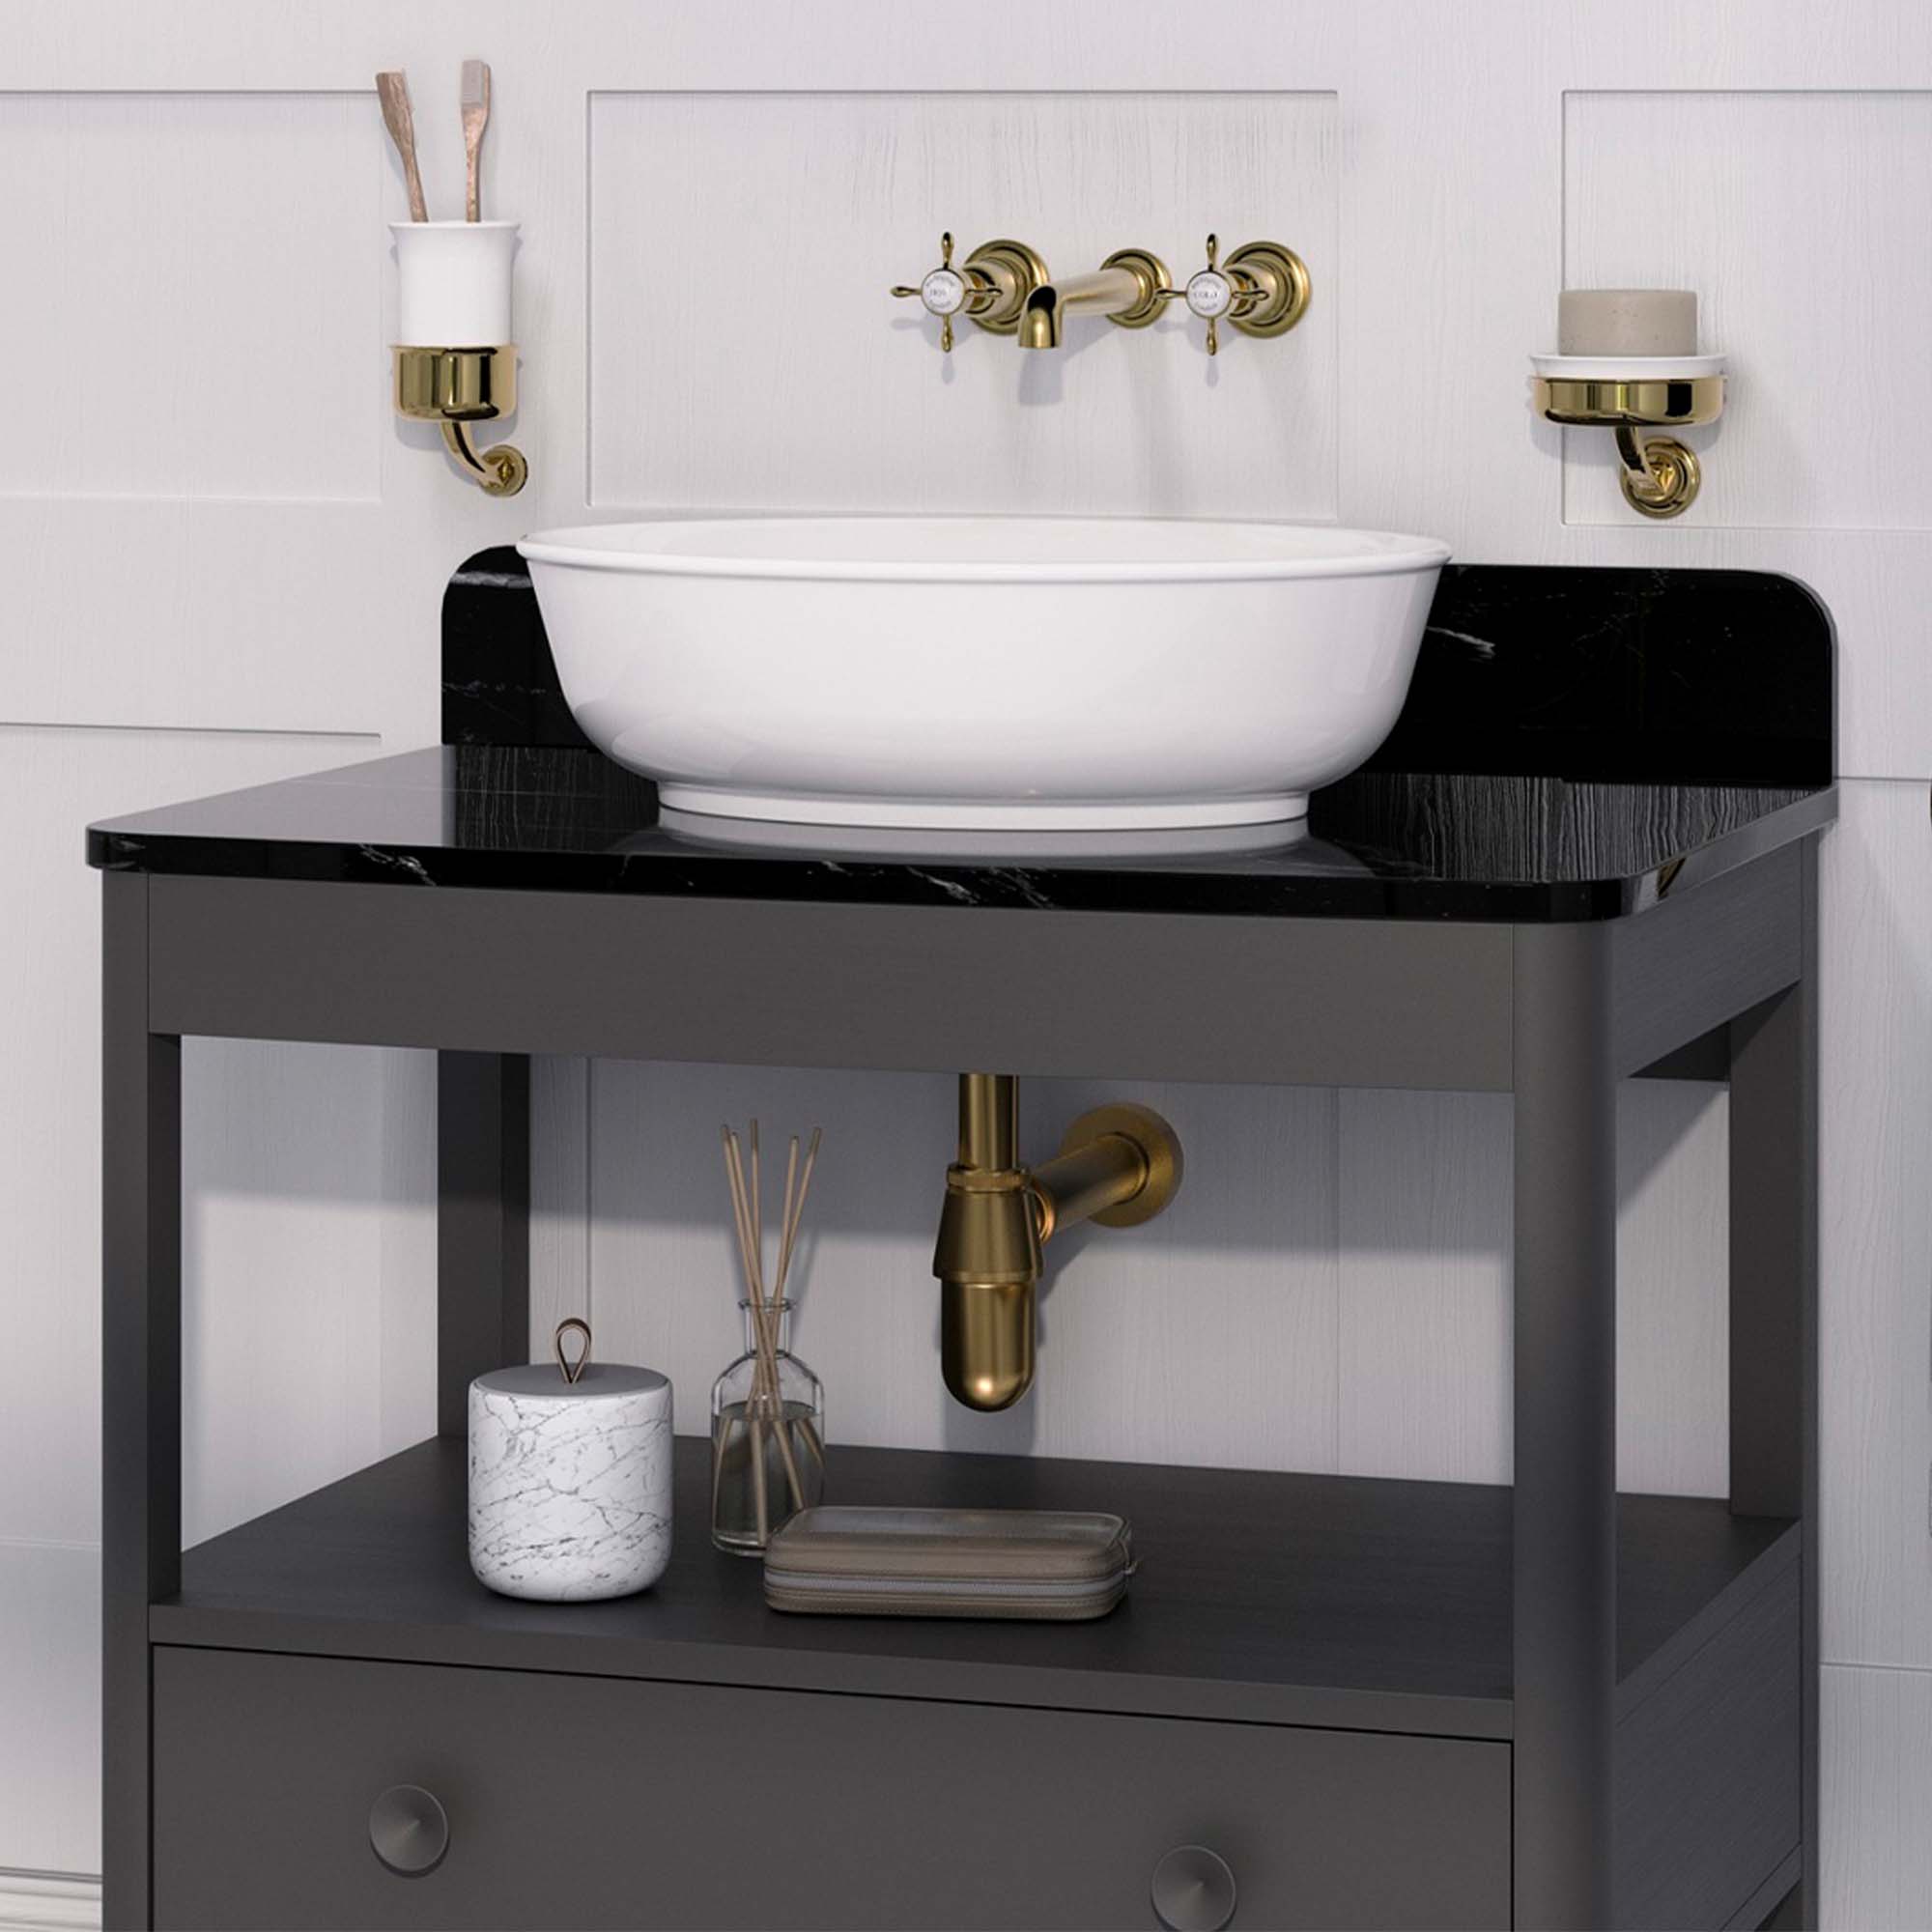 burlington guild 850 floorstanding single drawer-vanity unit marquina worktop ashbee grey